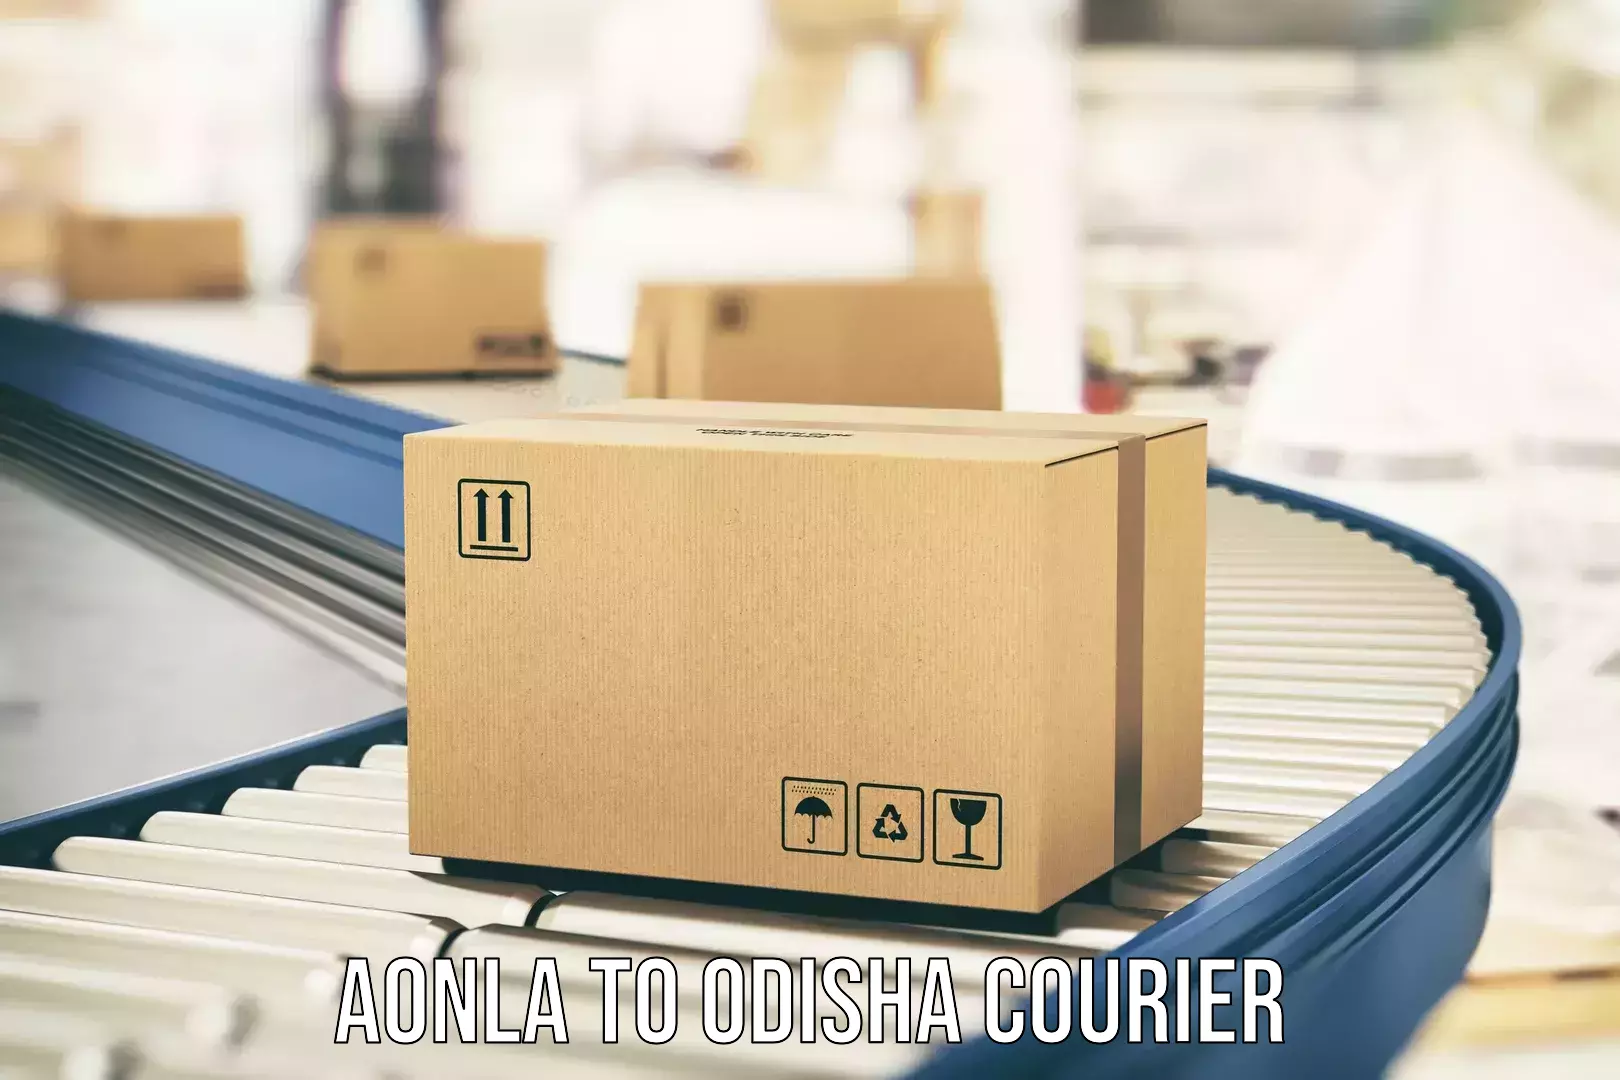 Efficient moving company Aonla to Joda